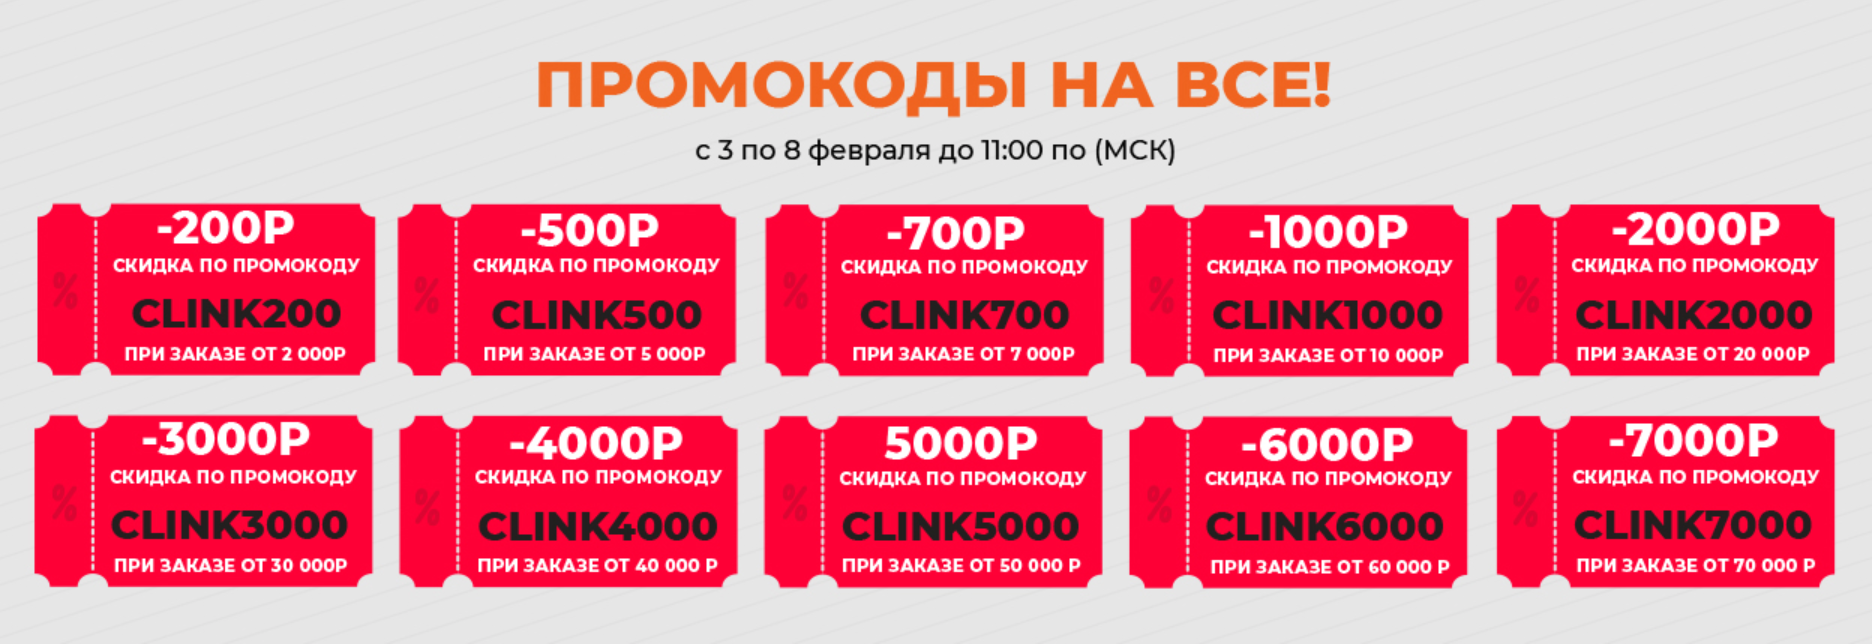 Промокод Алиэкспресс Скидка От 500 Рублей